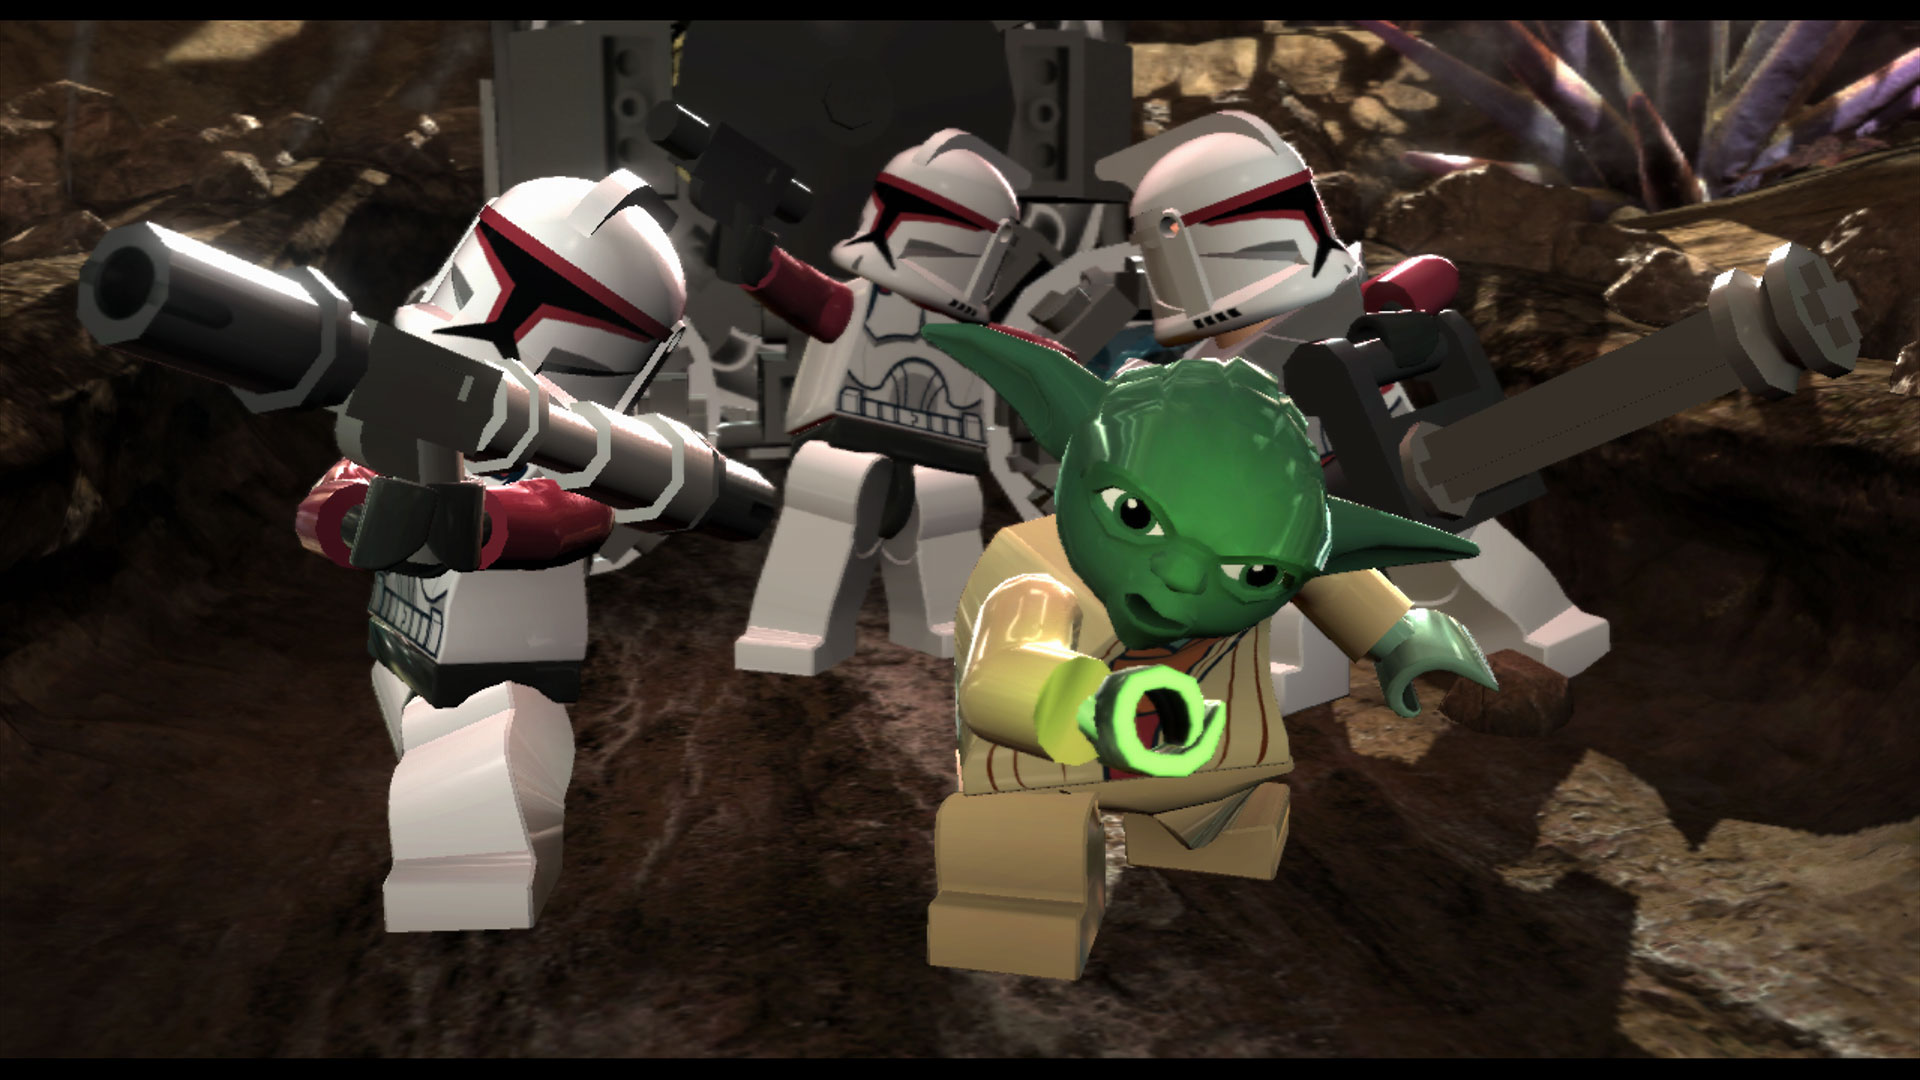 Descargar fondos de escritorio de Lego Star Wars Ii: La Trilogía Original HD